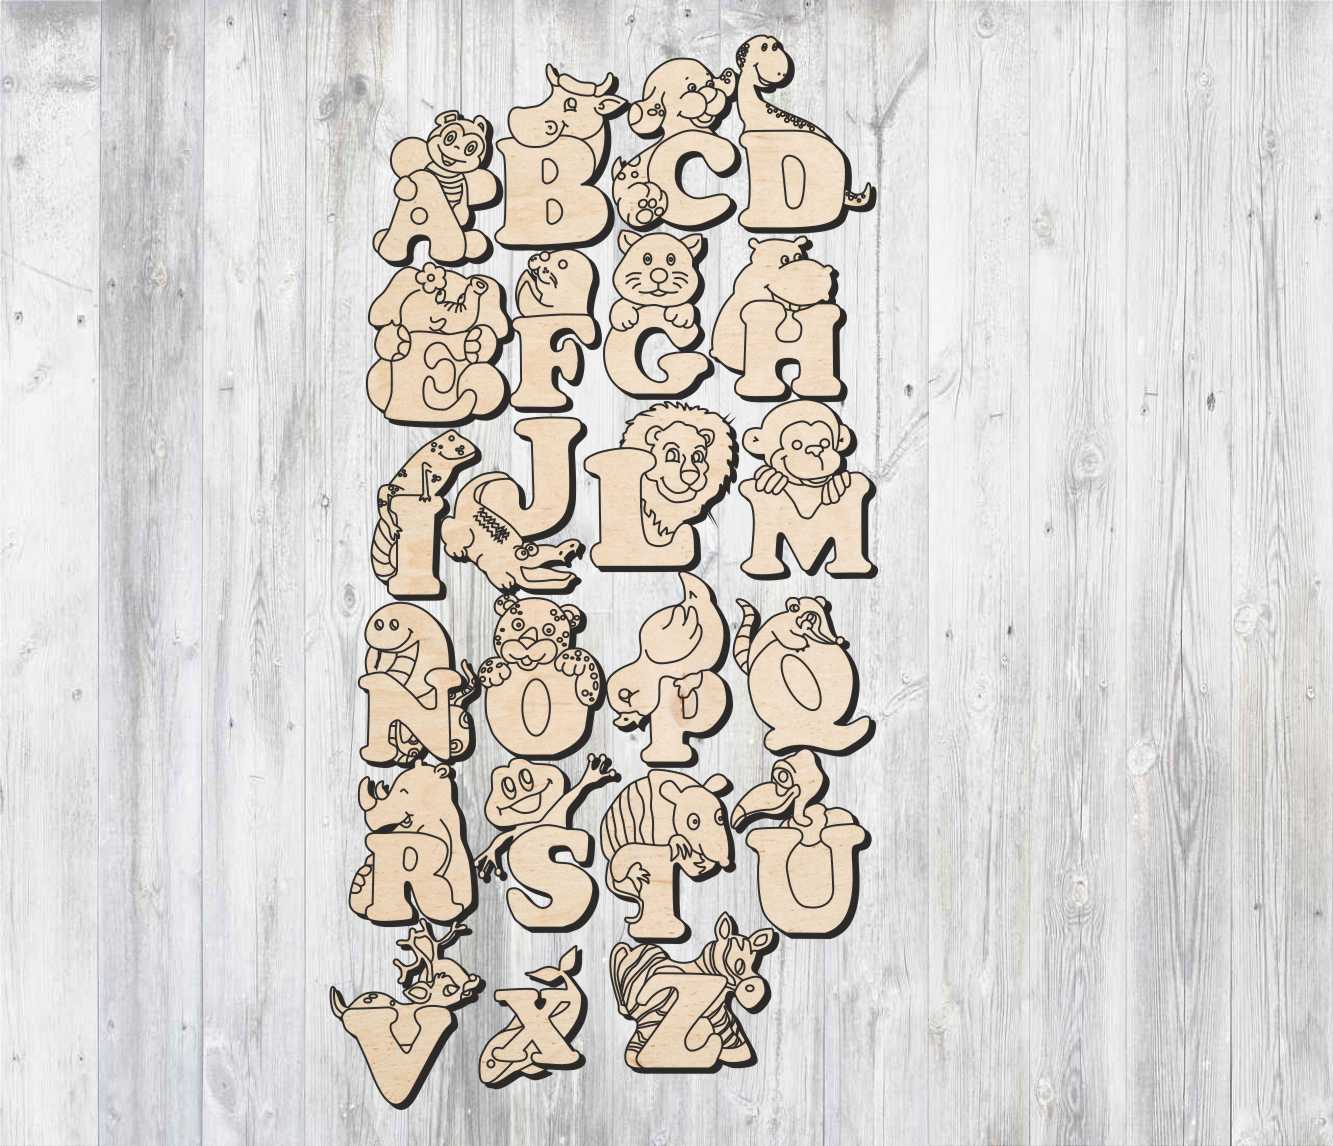 Лазерная резка английских букв в форме алфавита